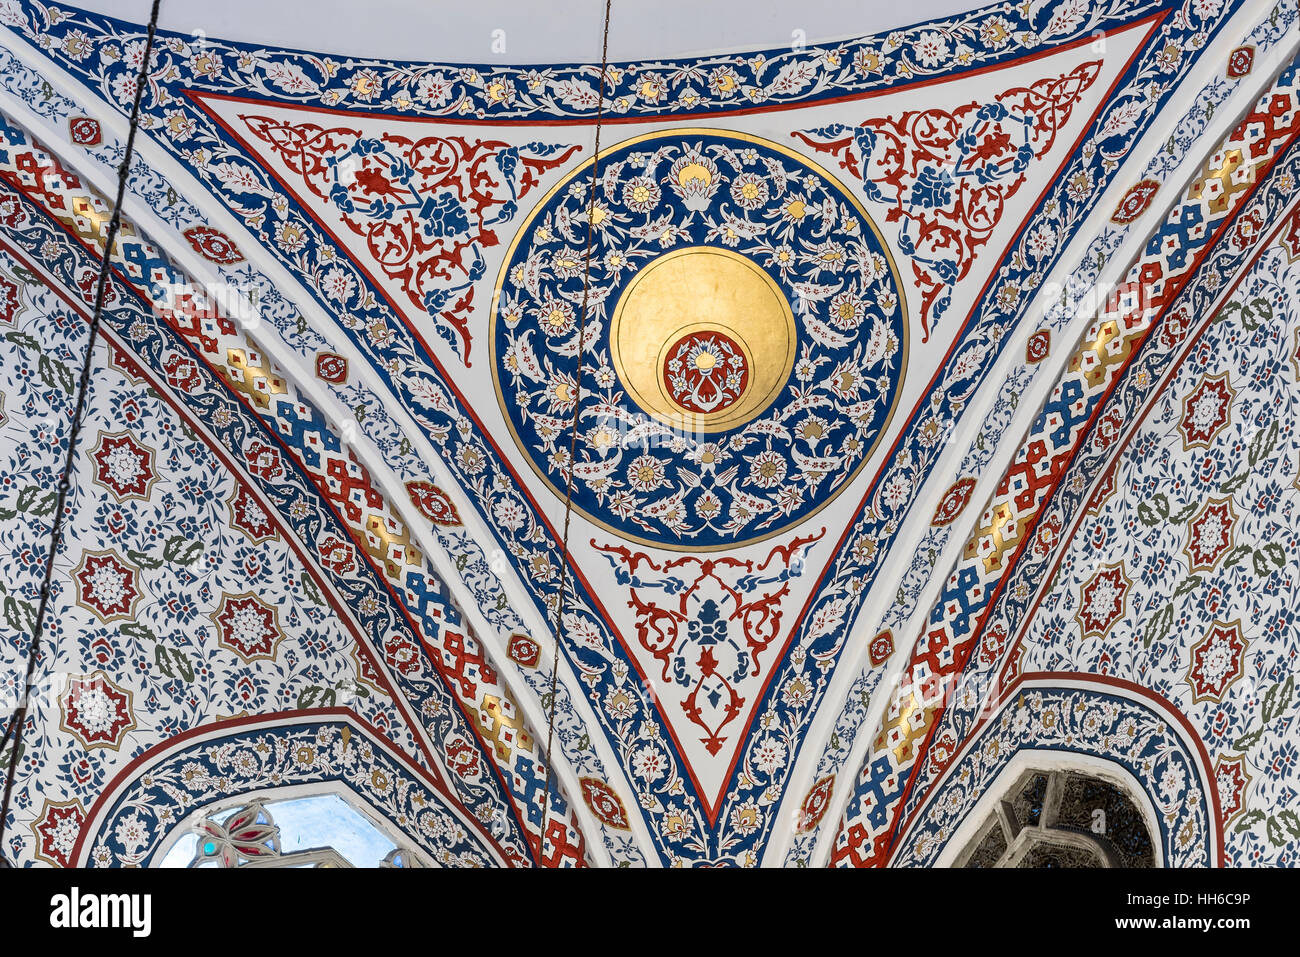 Die neue Valide Sultan-Moschee ist eine osmanische imperiale Moschee befindet sich im Stadtteil Eminönü in Istanbul, Türkei. Es befindet sich am Goldenen Horn, am südlichen Ende der Galata-Brücke, und gehört zu den architektonischen Sehenswürdigkeiten von Istanbul. Stockfoto